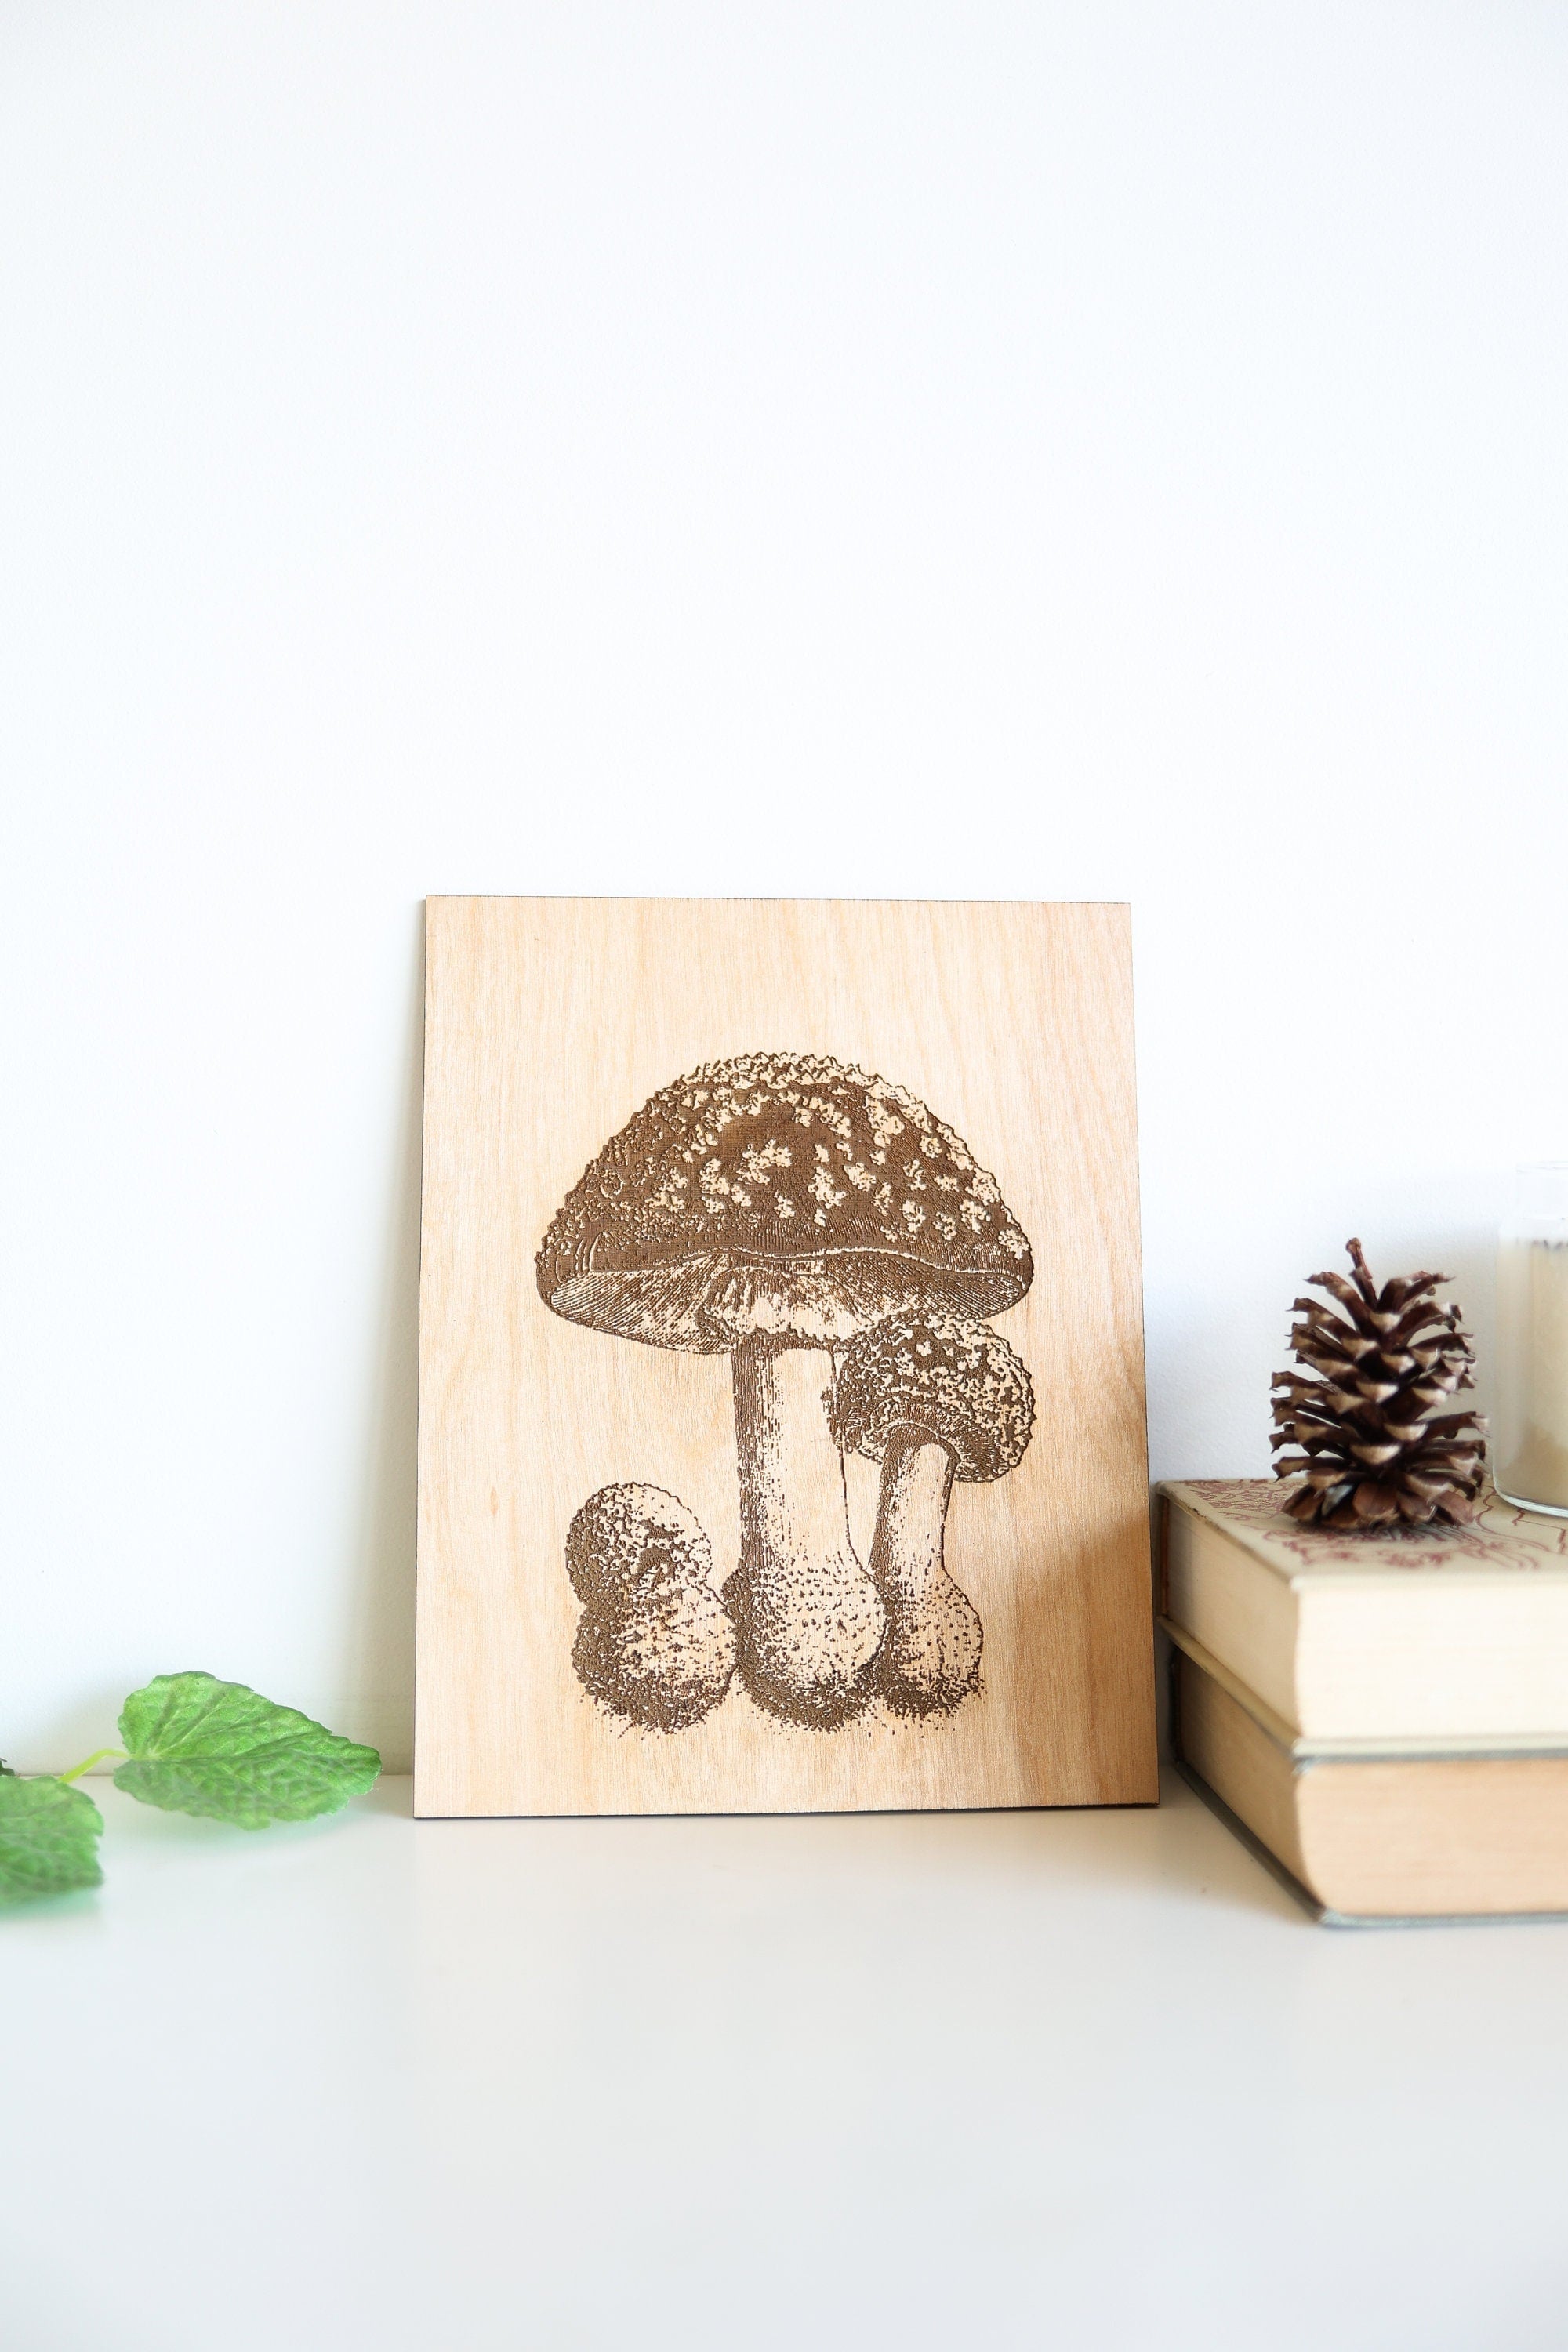 Wooden Mushroom Panel Wall Art